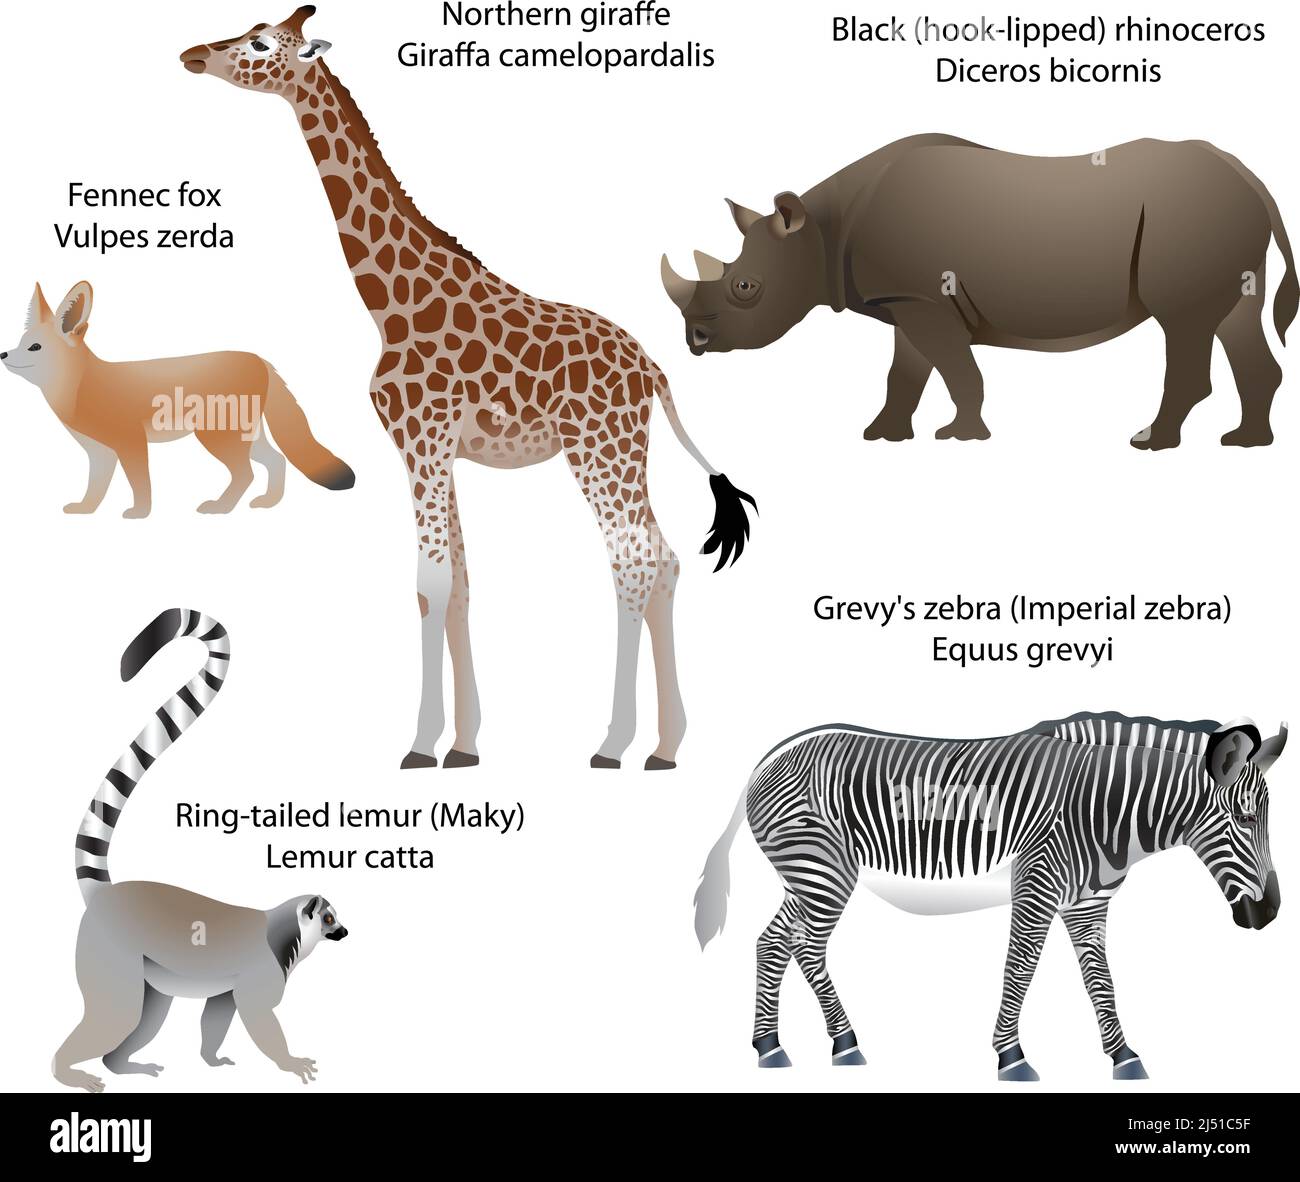 Collection d'animaux vivant sur le territoire de l'Afrique : girafe du nord, rhinocéros noir, zèbre de Grevy, lemur à queue annulaire, renard de fennec Illustration de Vecteur